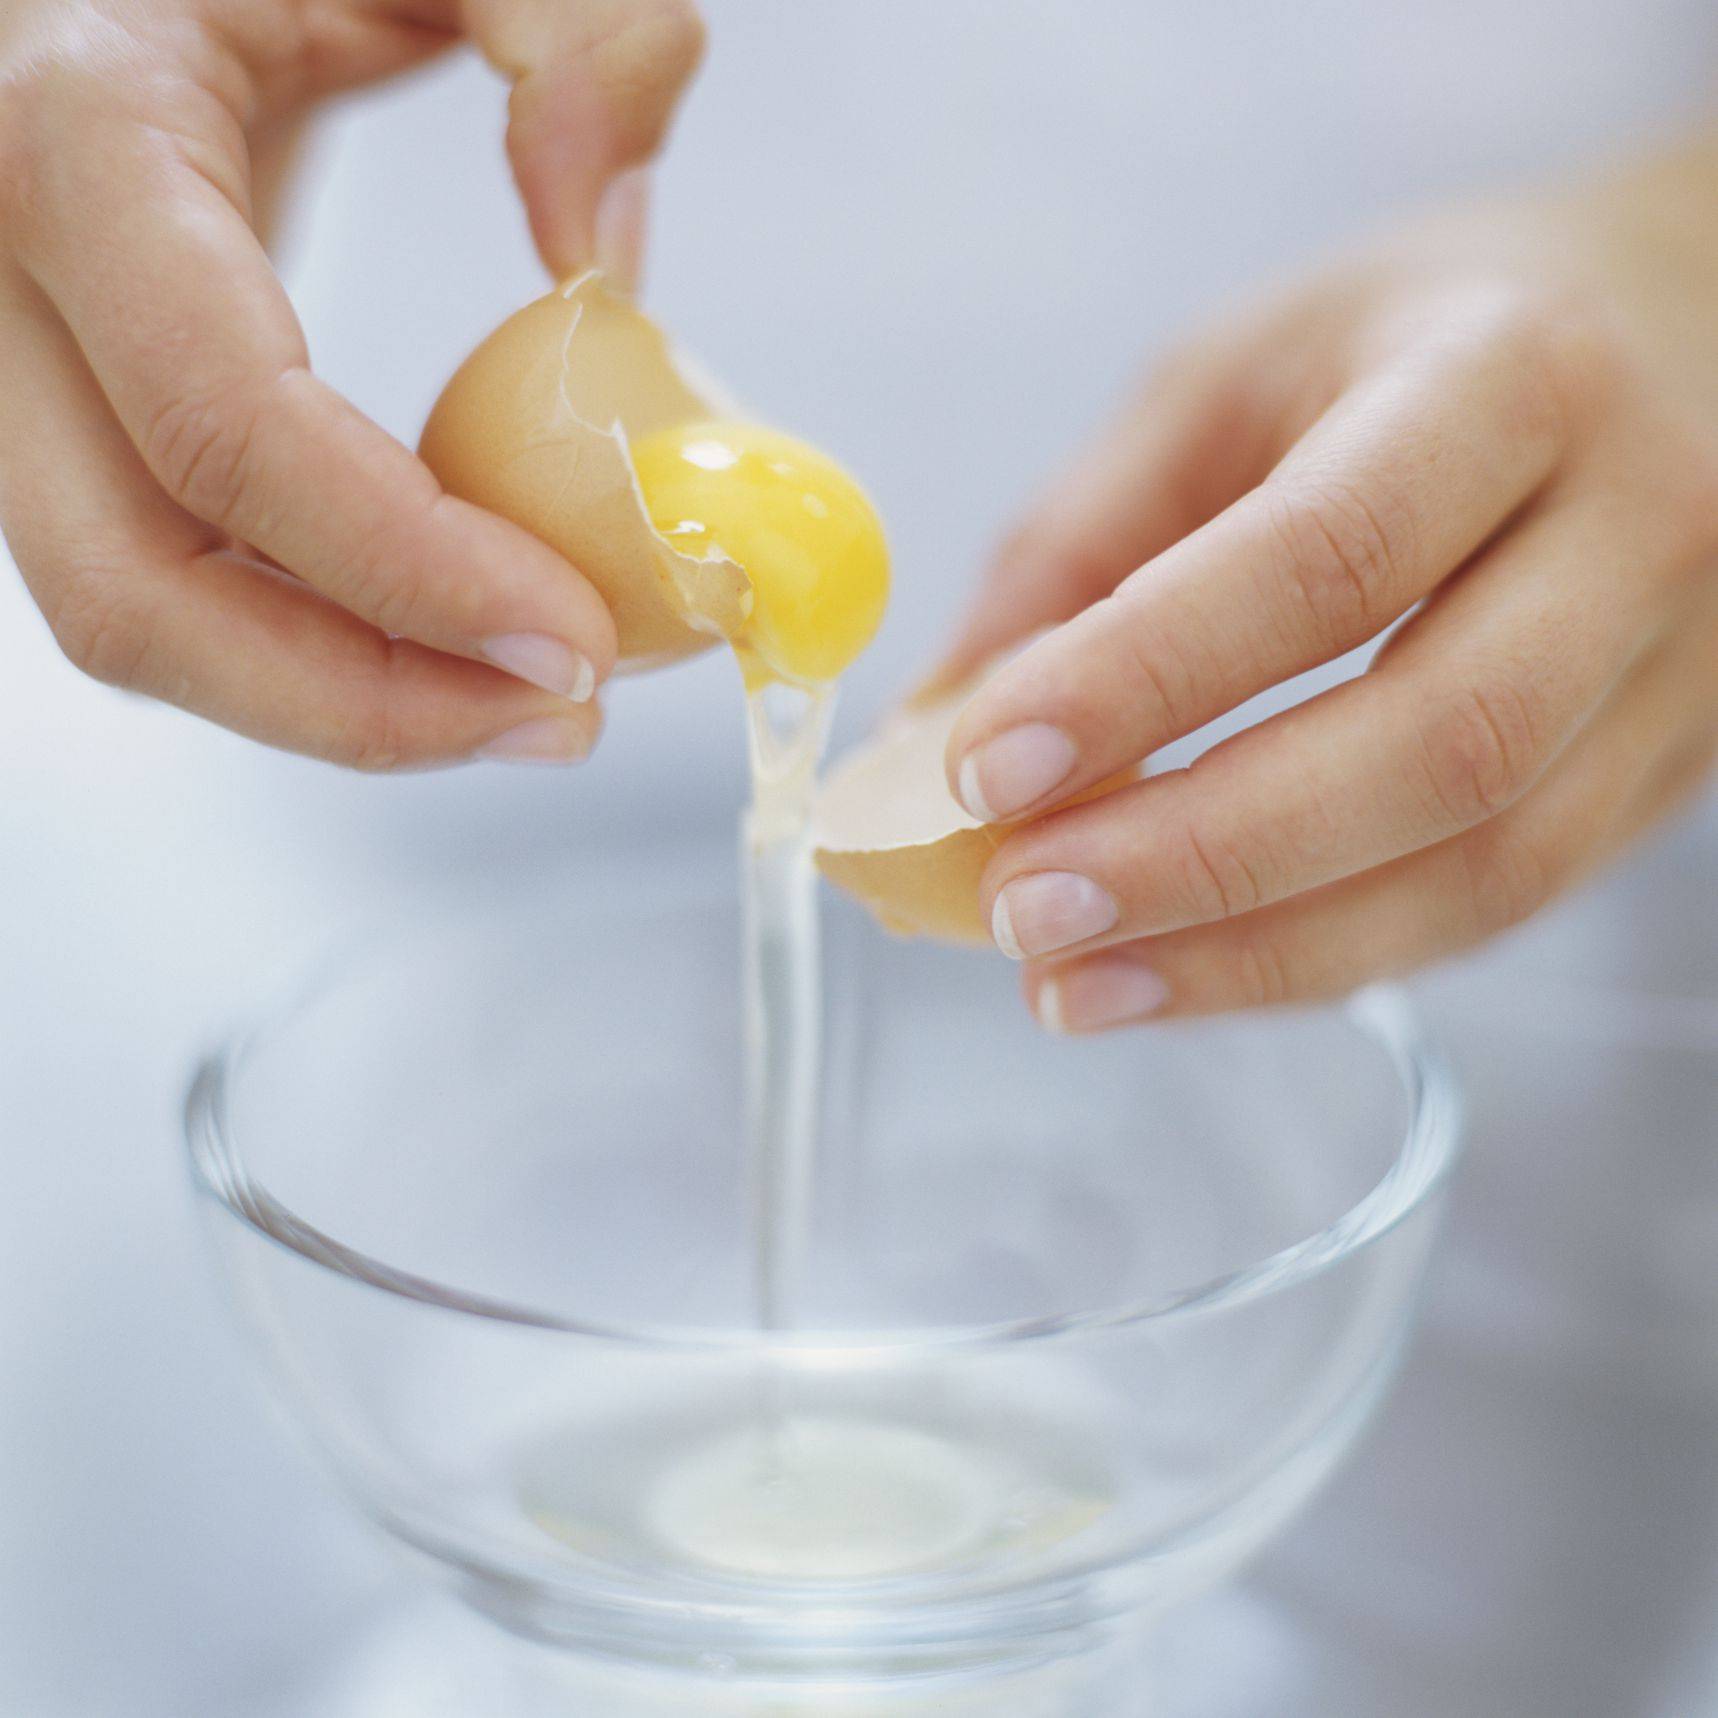 Маска из яйца для лица: проверенные и эффективные рецепты